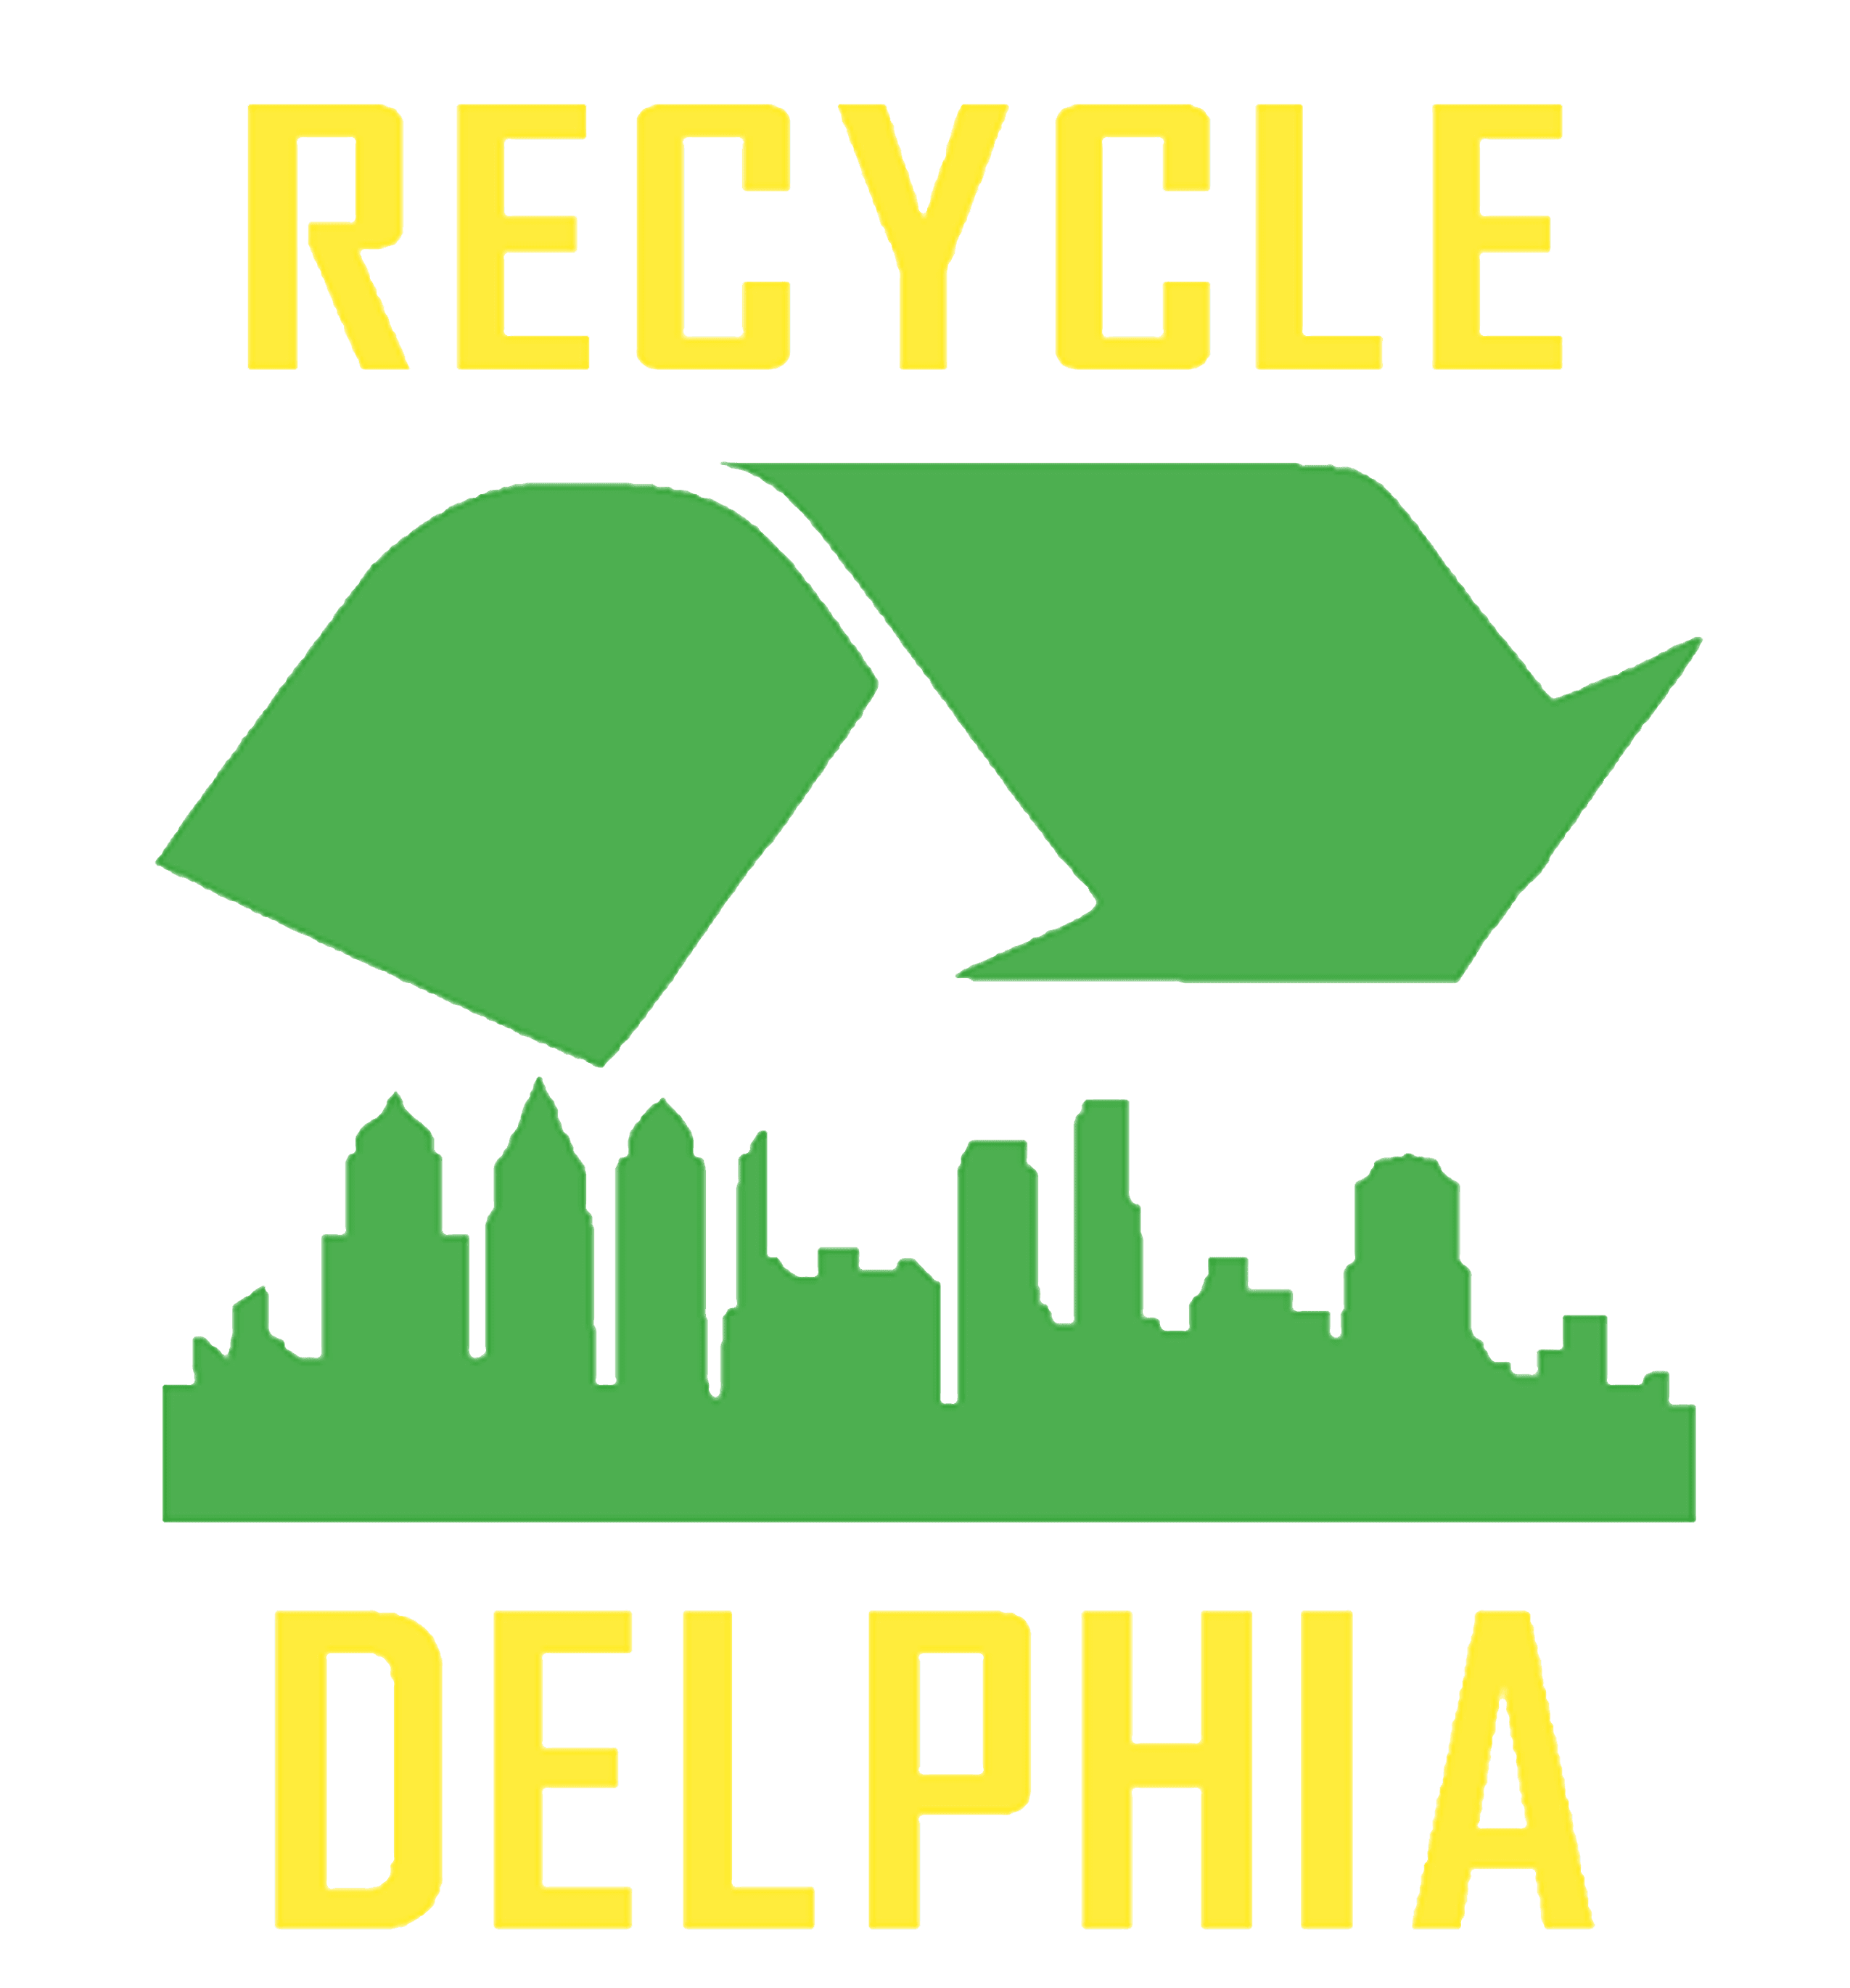 Recycledelphia